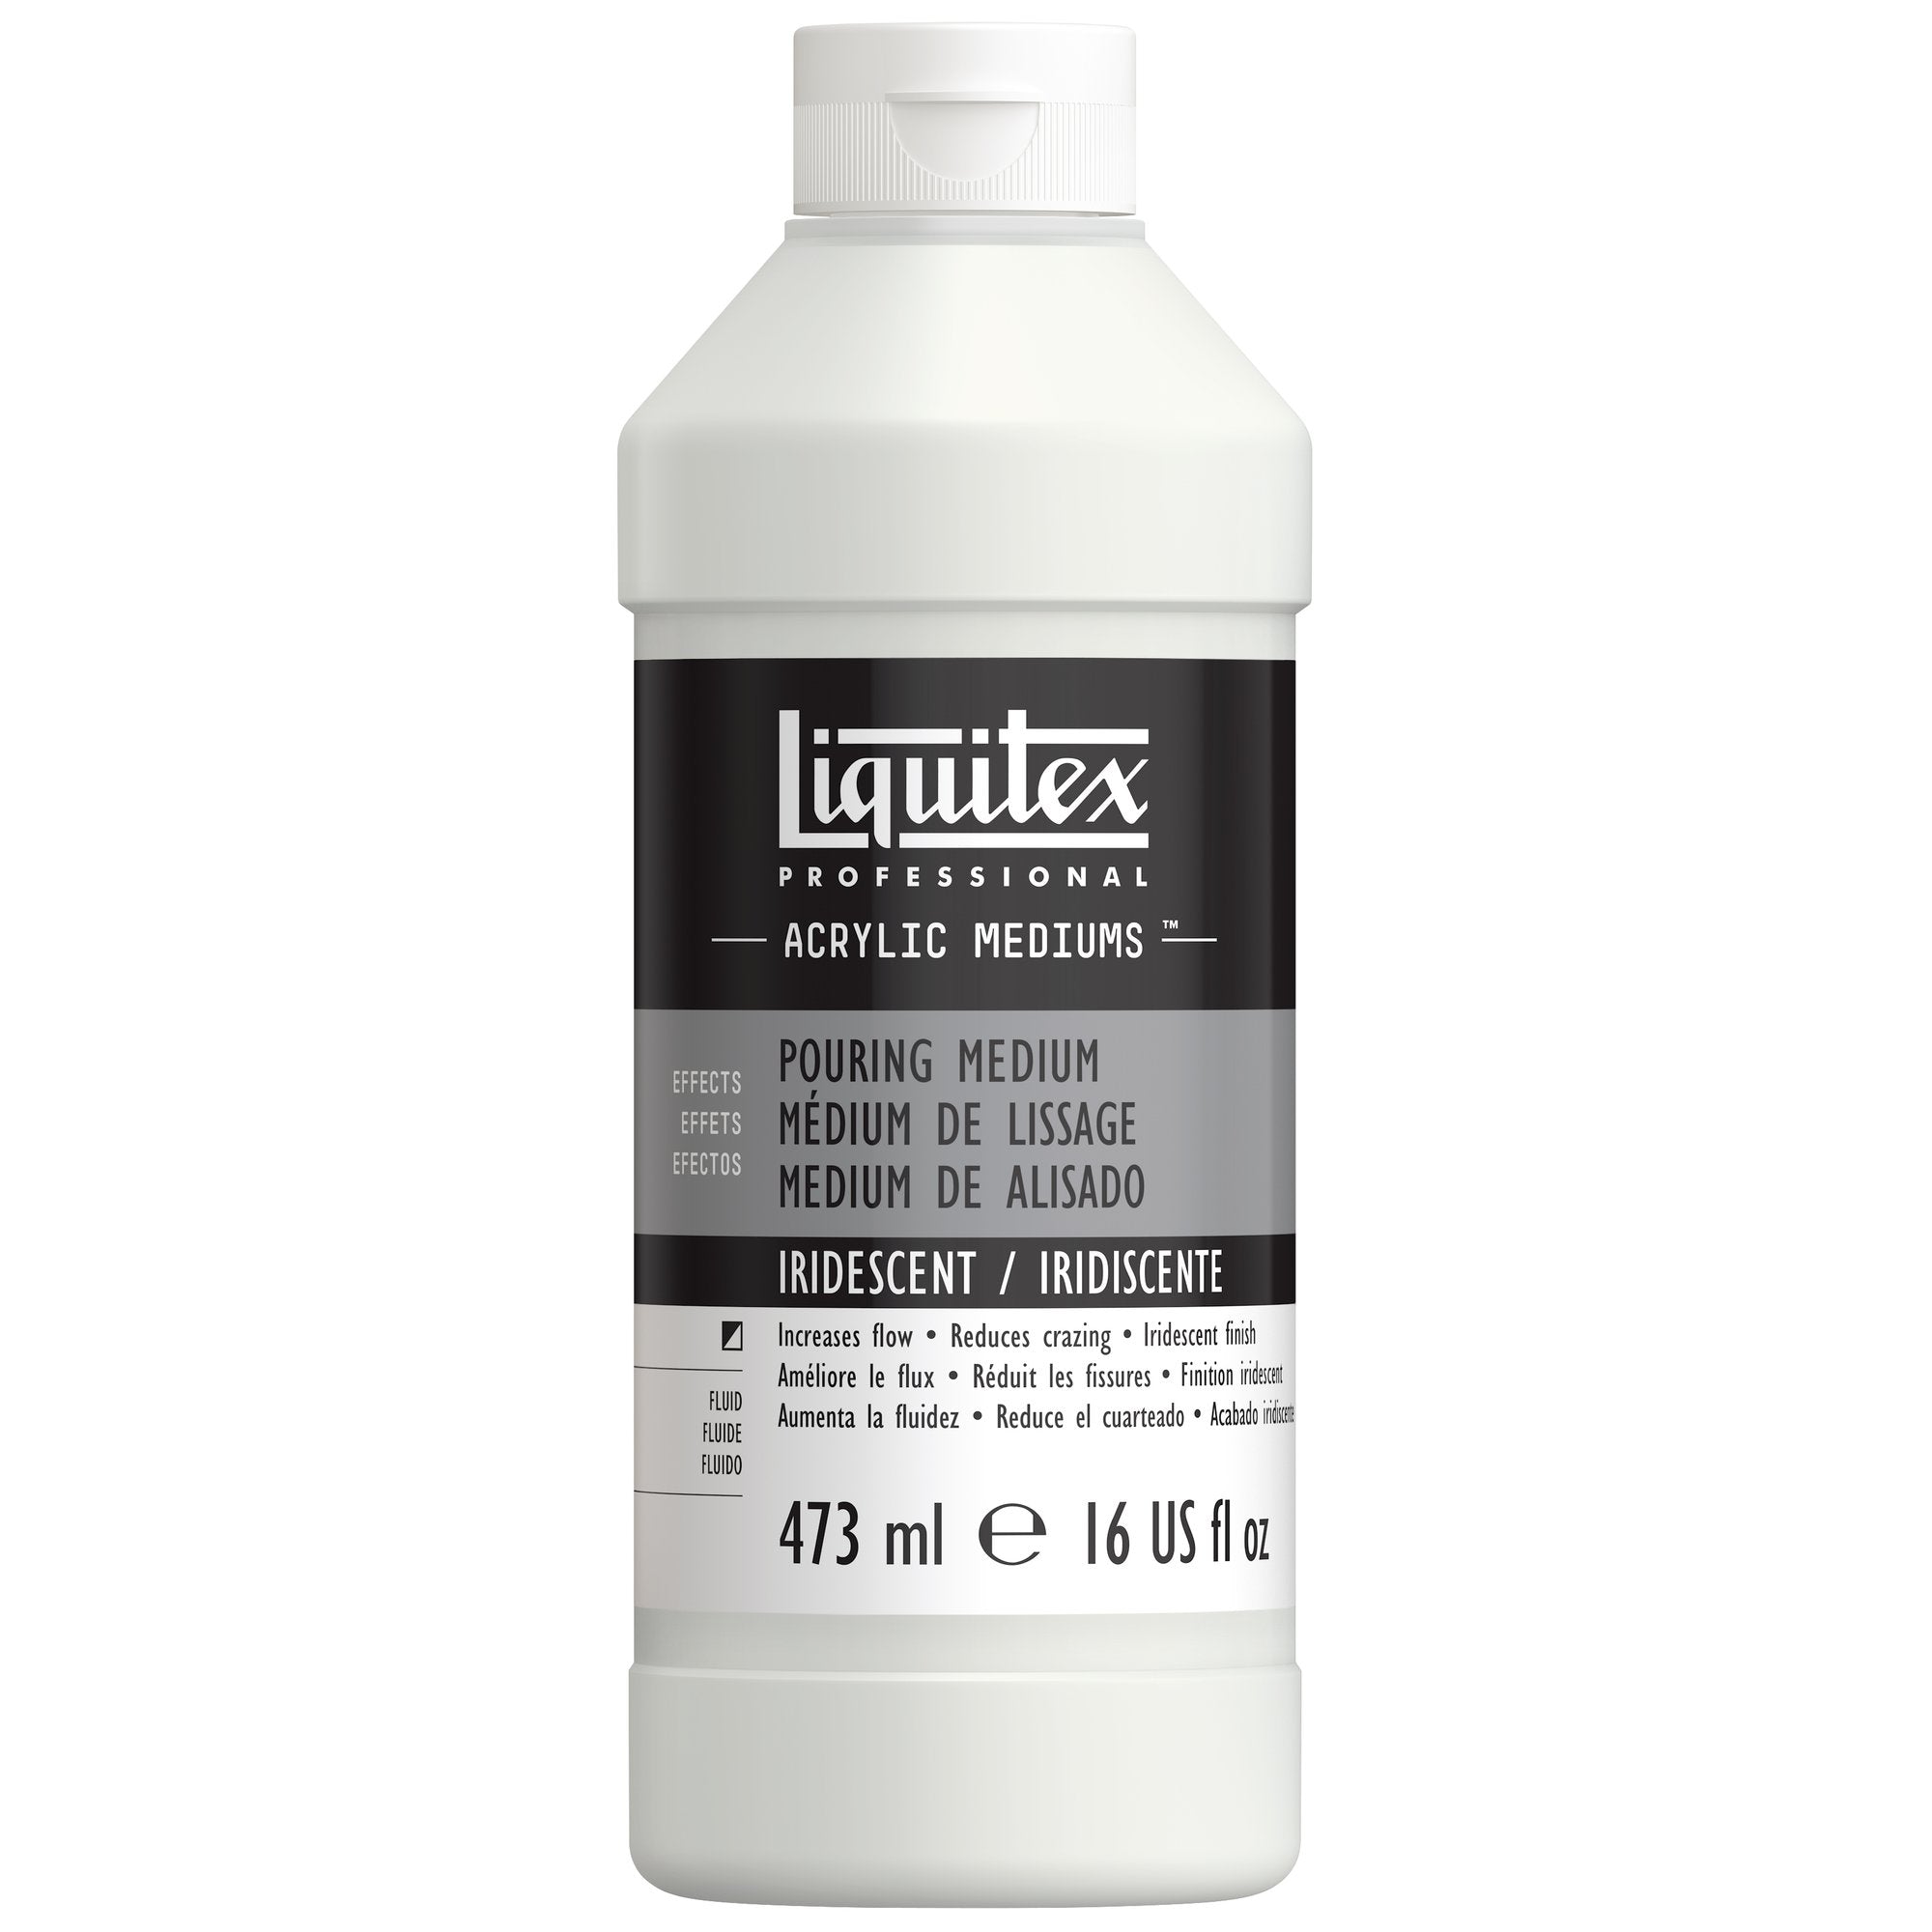 Liquitex Professional Pouring Medium Iridescent 473ml